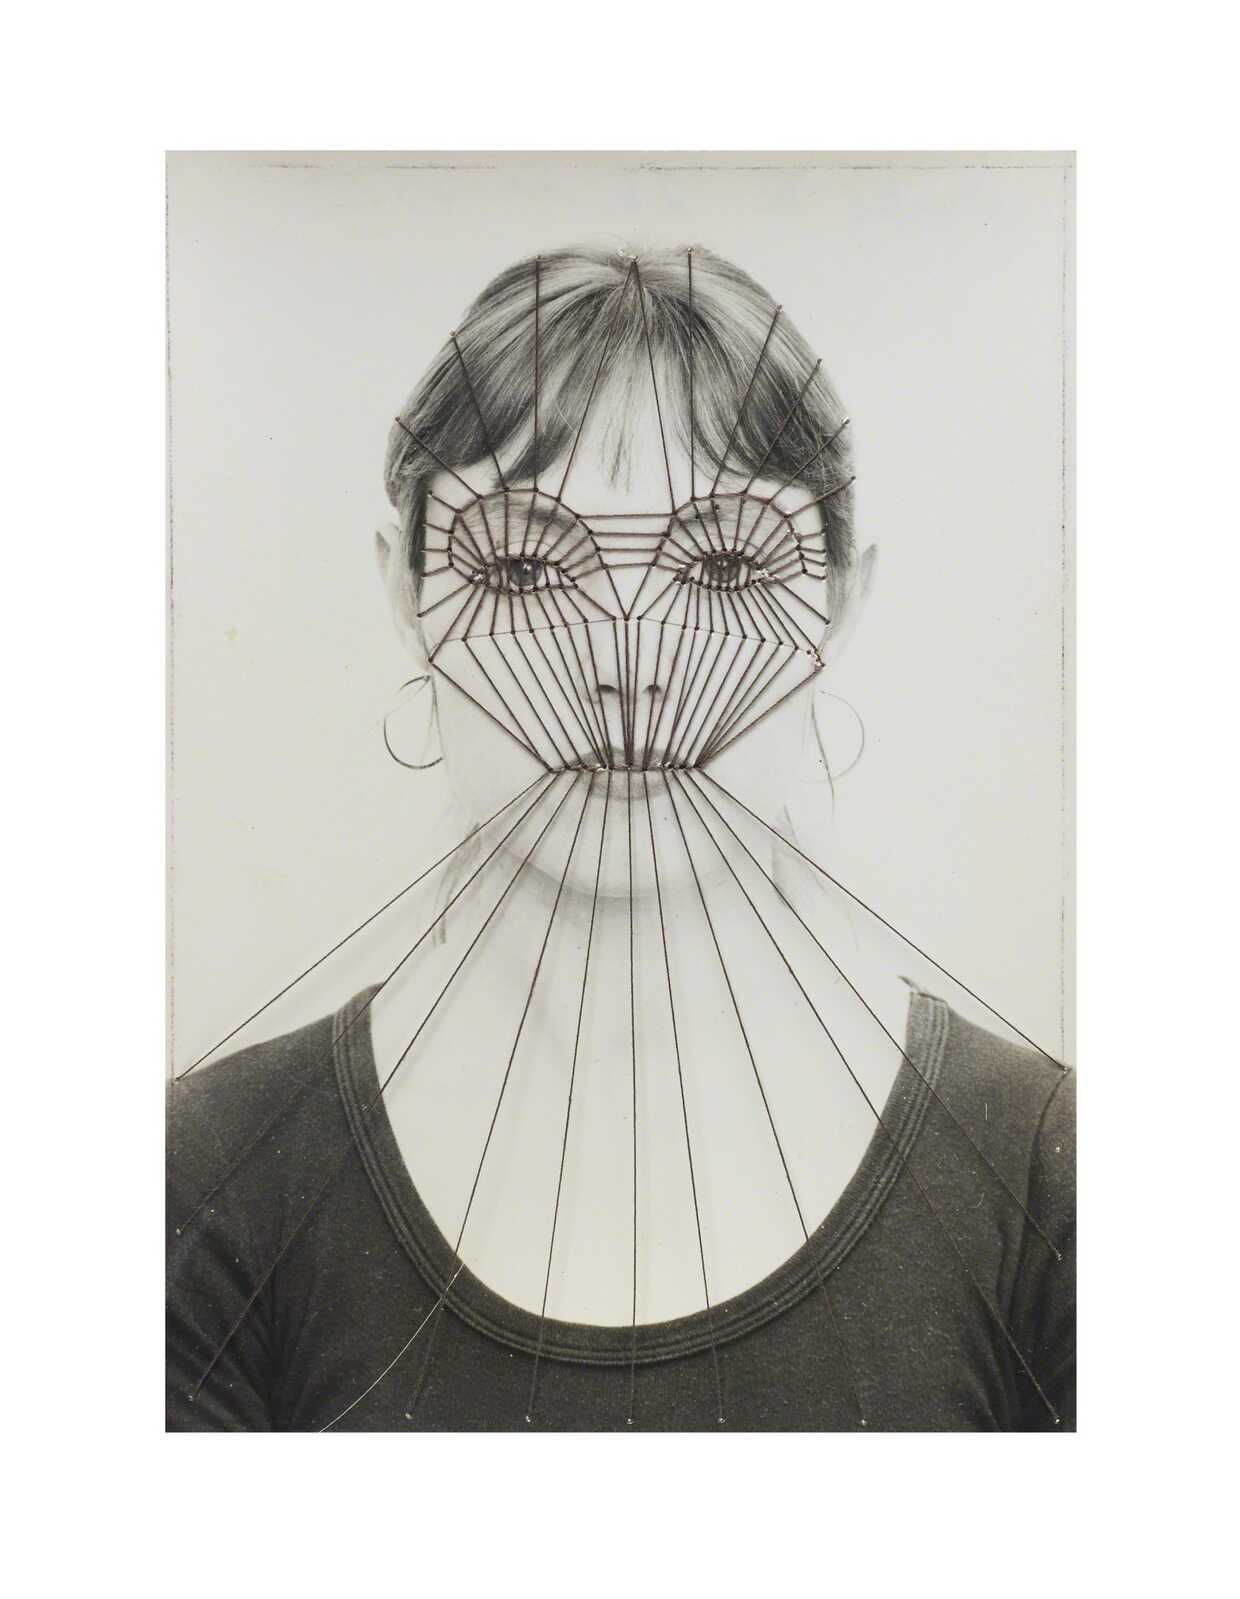 Annegret Soltau | Maske IV 26.11.75 [Mask IV 26.11.75] (1975 ...